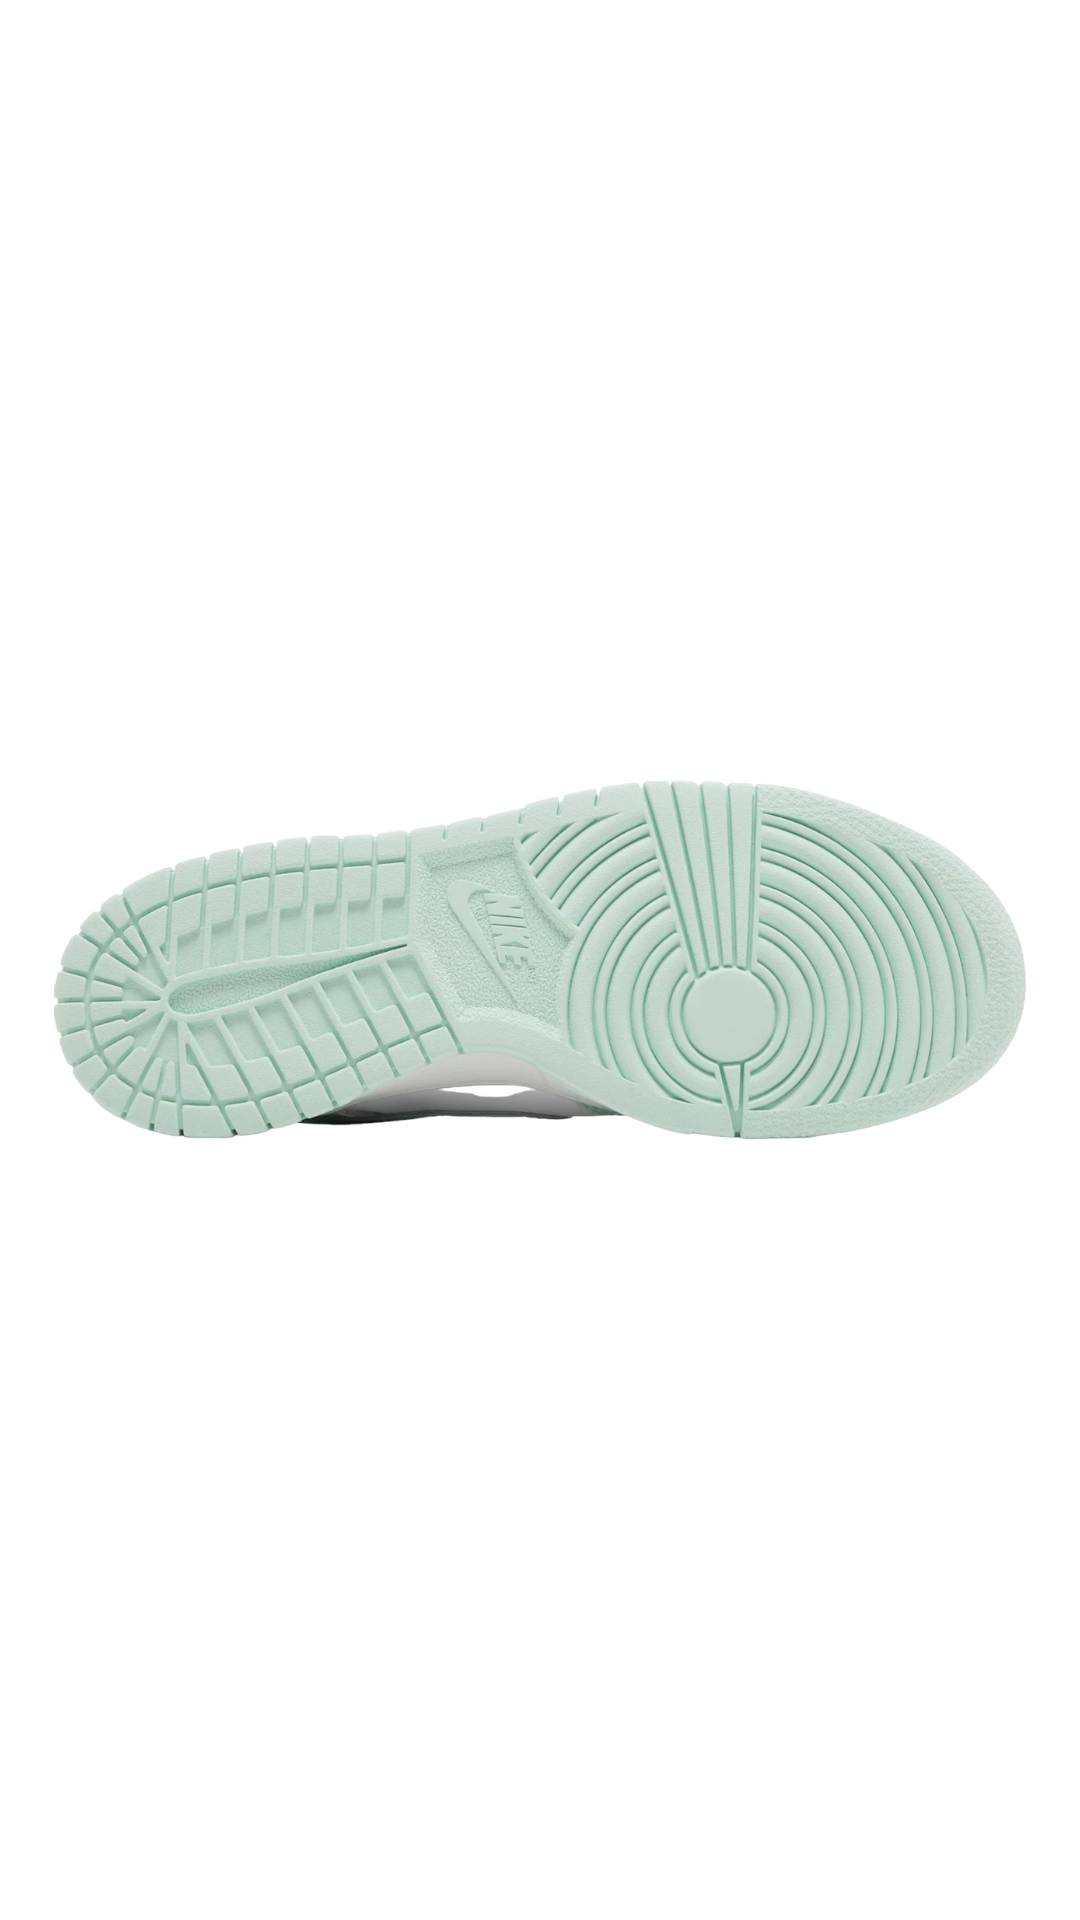 Nike Dunk Low GS 'Mint Foam' 7Y/8.5W